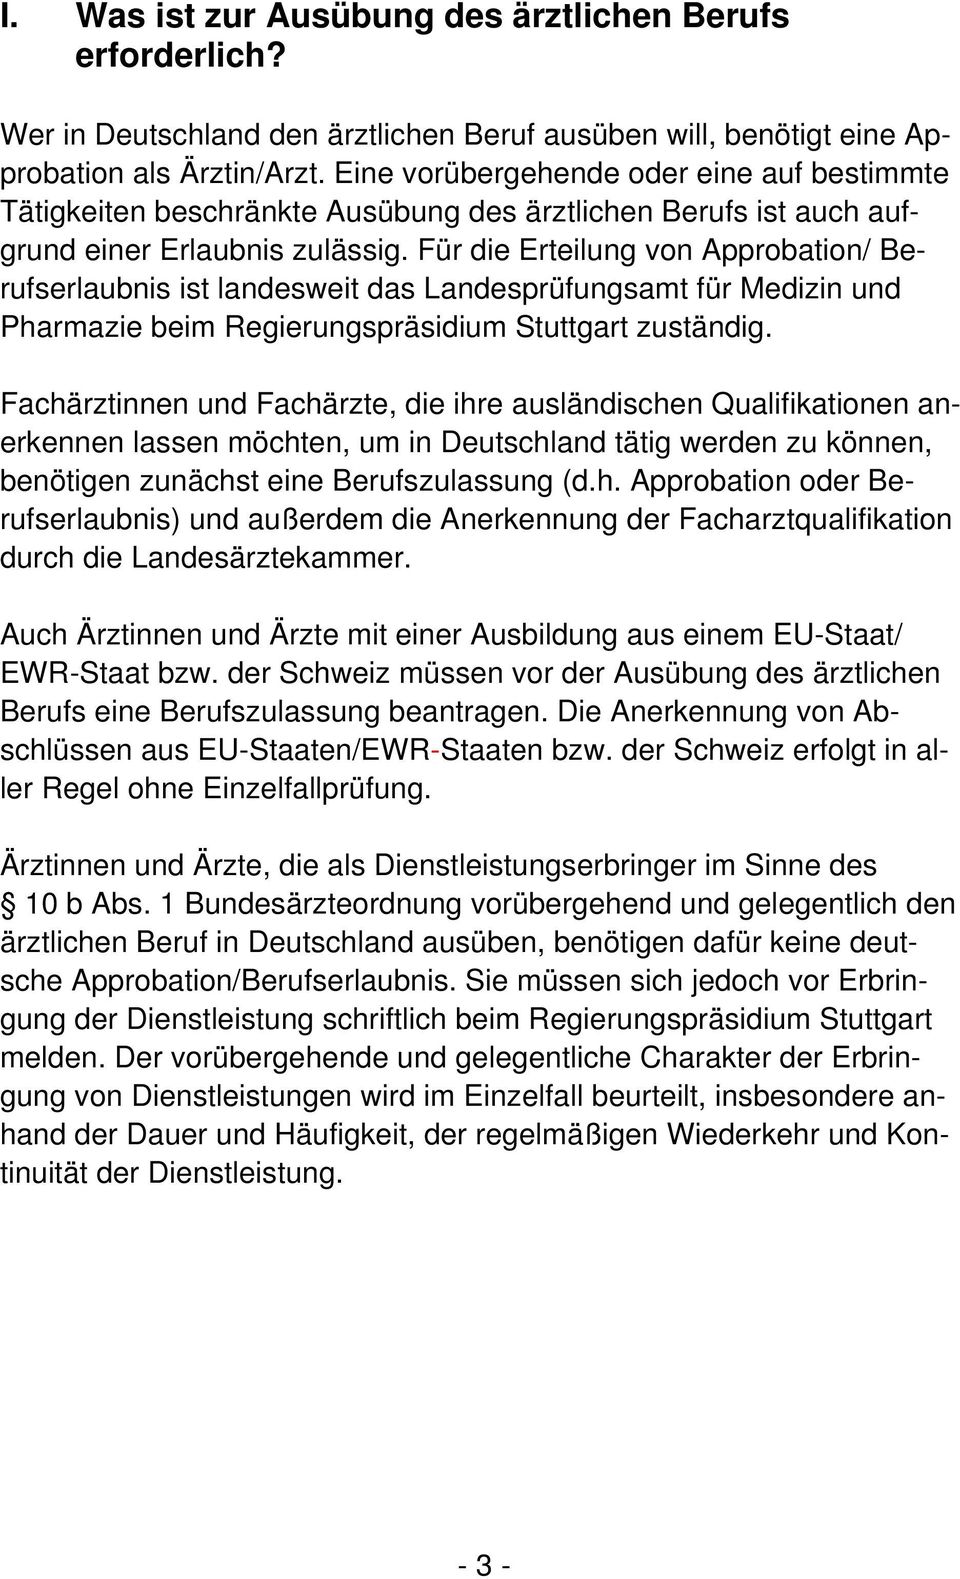 Für die Erteilung von Approbation/ Berufserlaubnis ist landesweit das Landesprüfungsamt für Medizin und Pharmazie beim Regierungspräsidium Stuttgart zuständig.